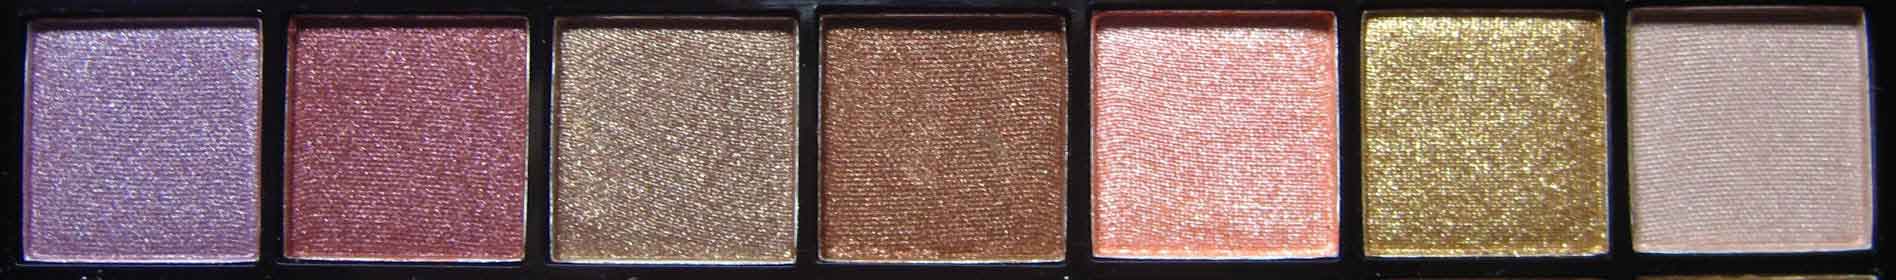 Make-up-Treasurebox-46---Nagelfabriek-Blog